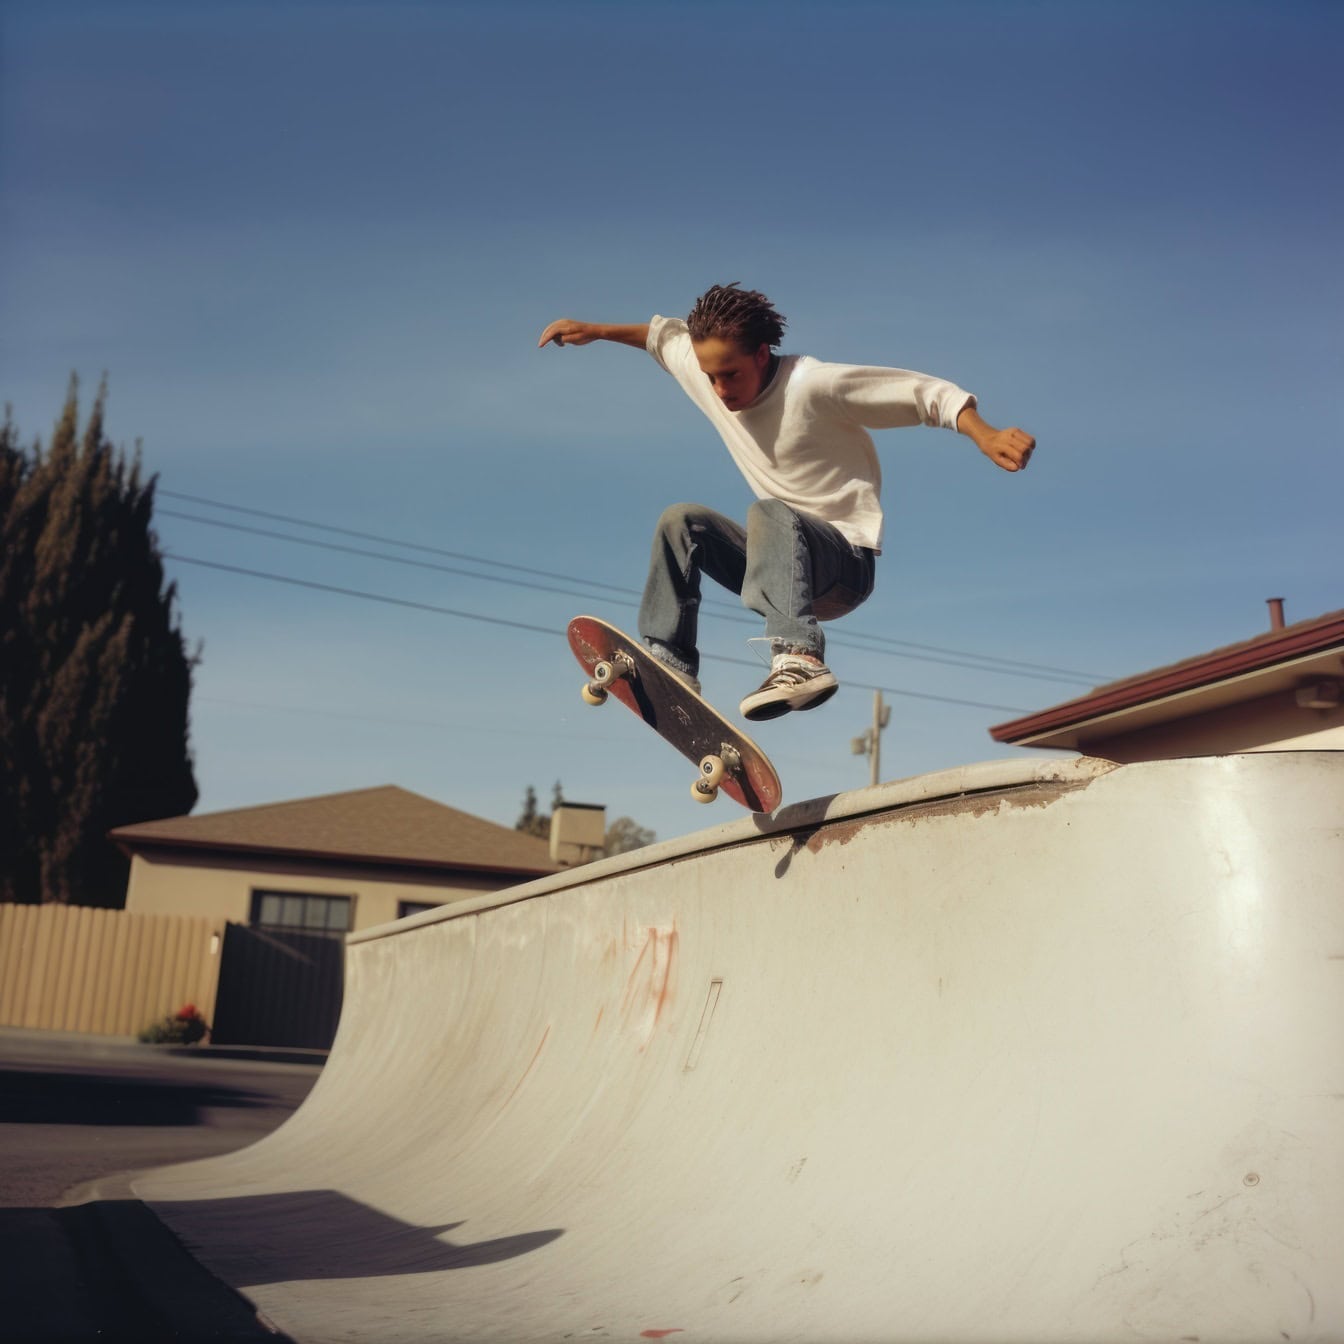 Remaja dengan wajah bergumpal melompat dengan skateboard di tanjakan geser, contoh foto buruk yang dihasilkan Ai